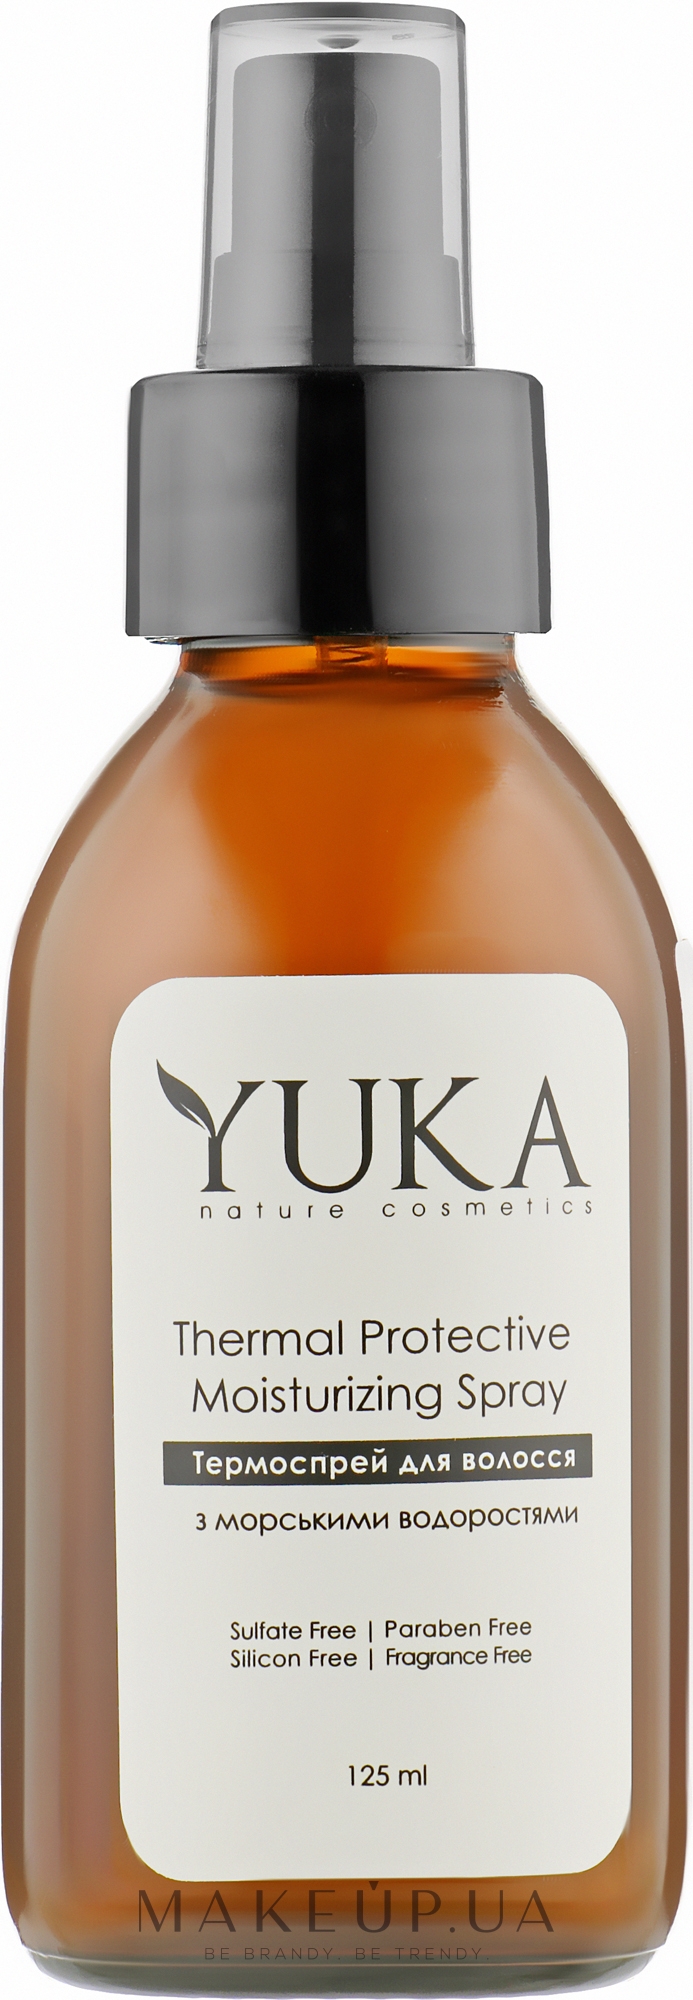 Термоспрей для увлажнения, восстановления и защиты волос - Yuka Thermal Protective Moisturizing Spray  — фото 125ml